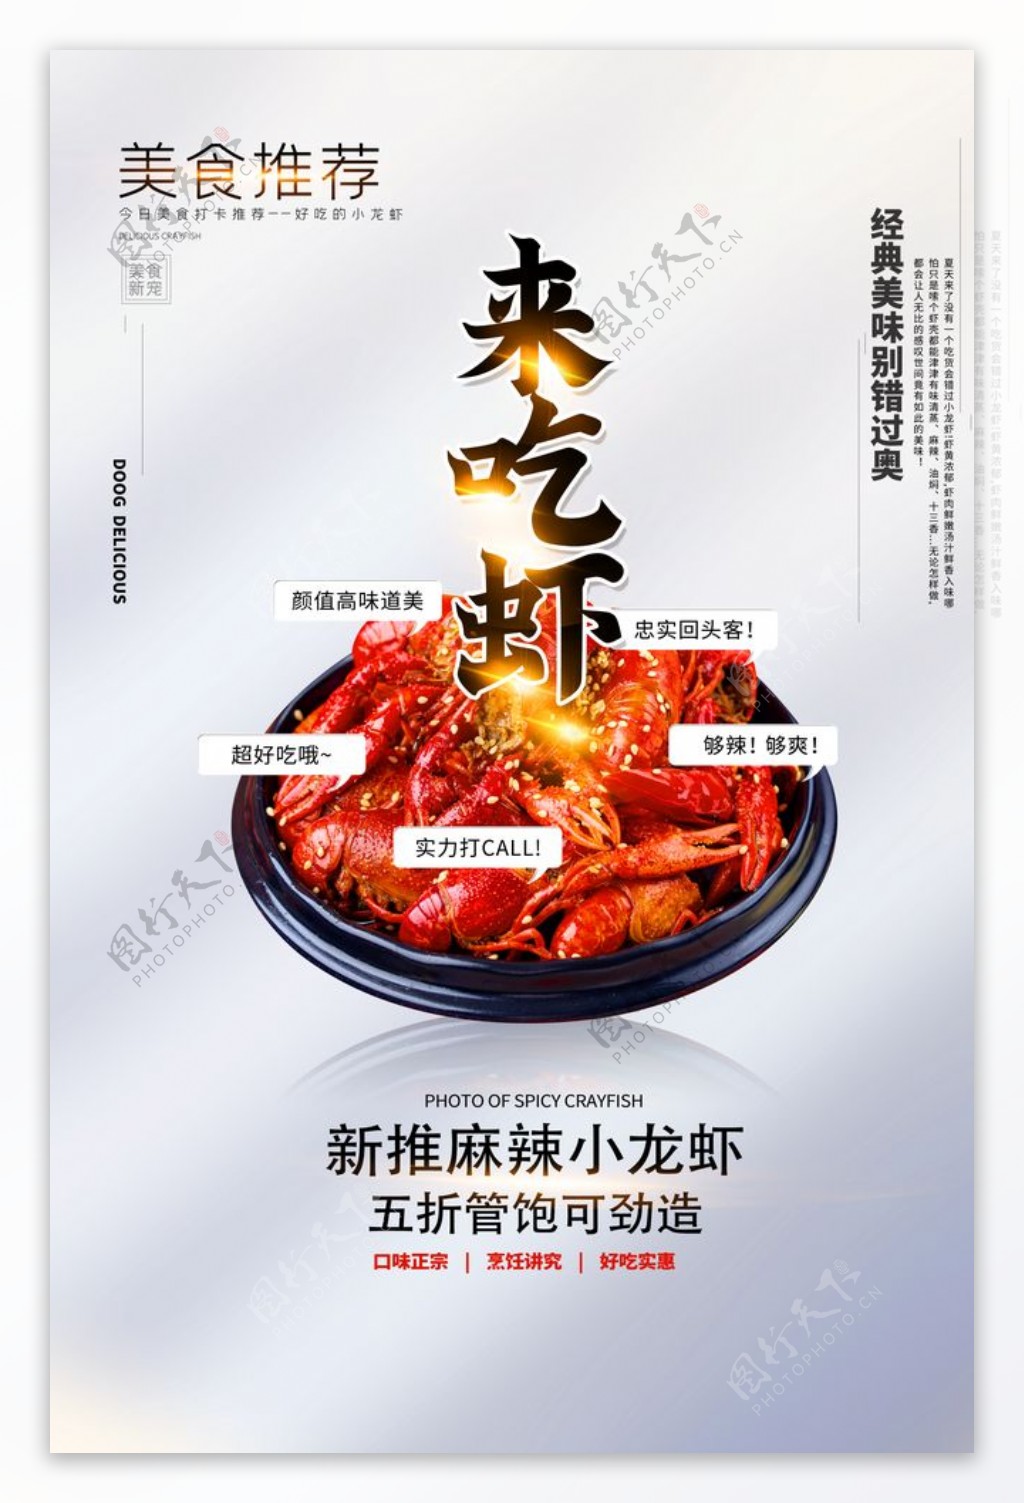 吃虾美食促销活动宣传海报素材